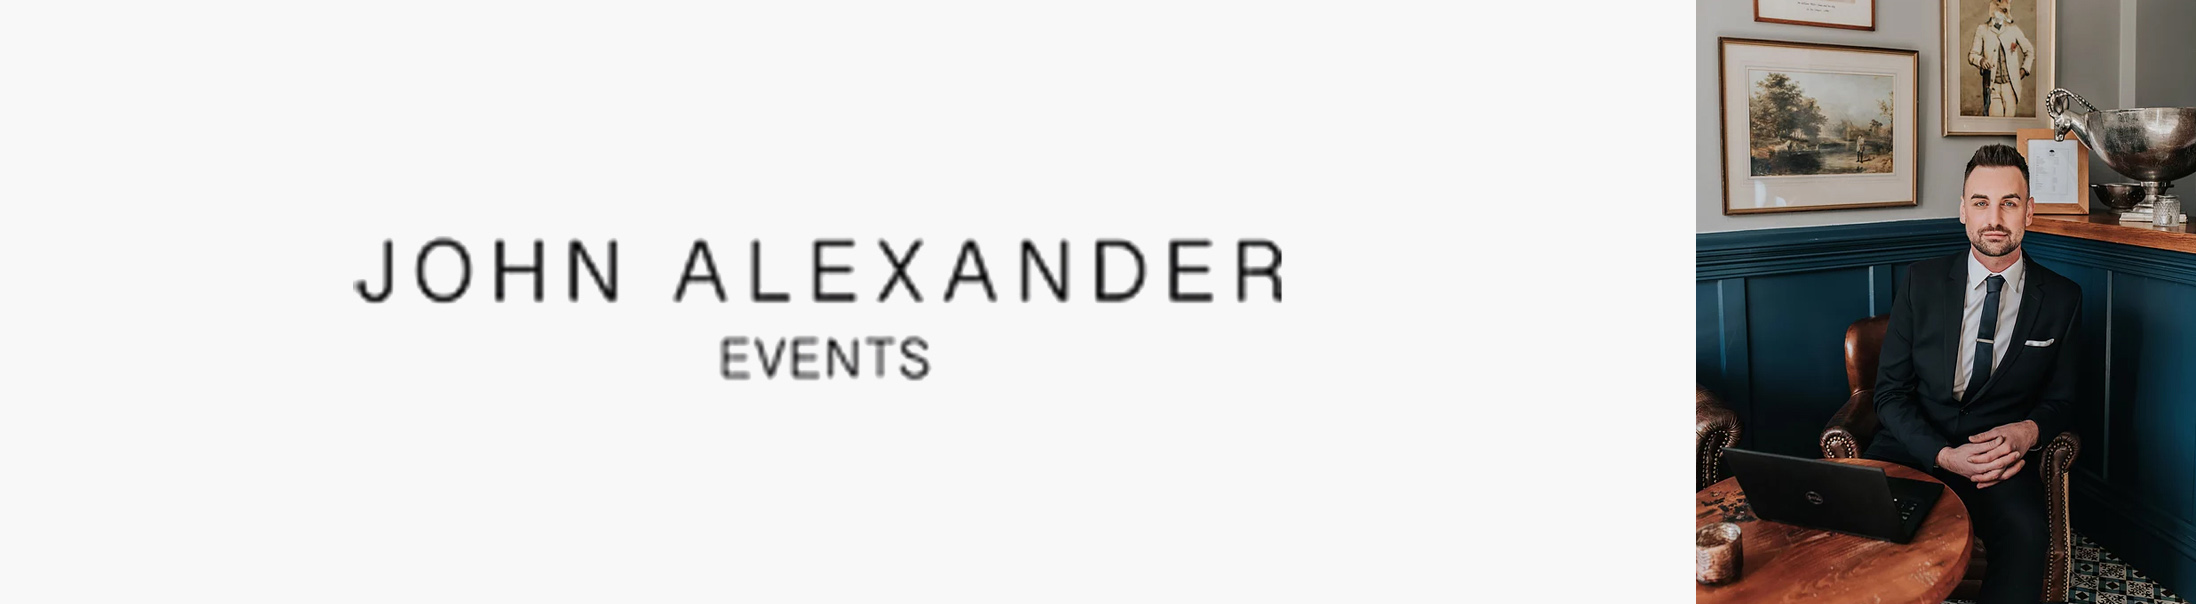 Top UK Wedding Planners - John Alexander Events